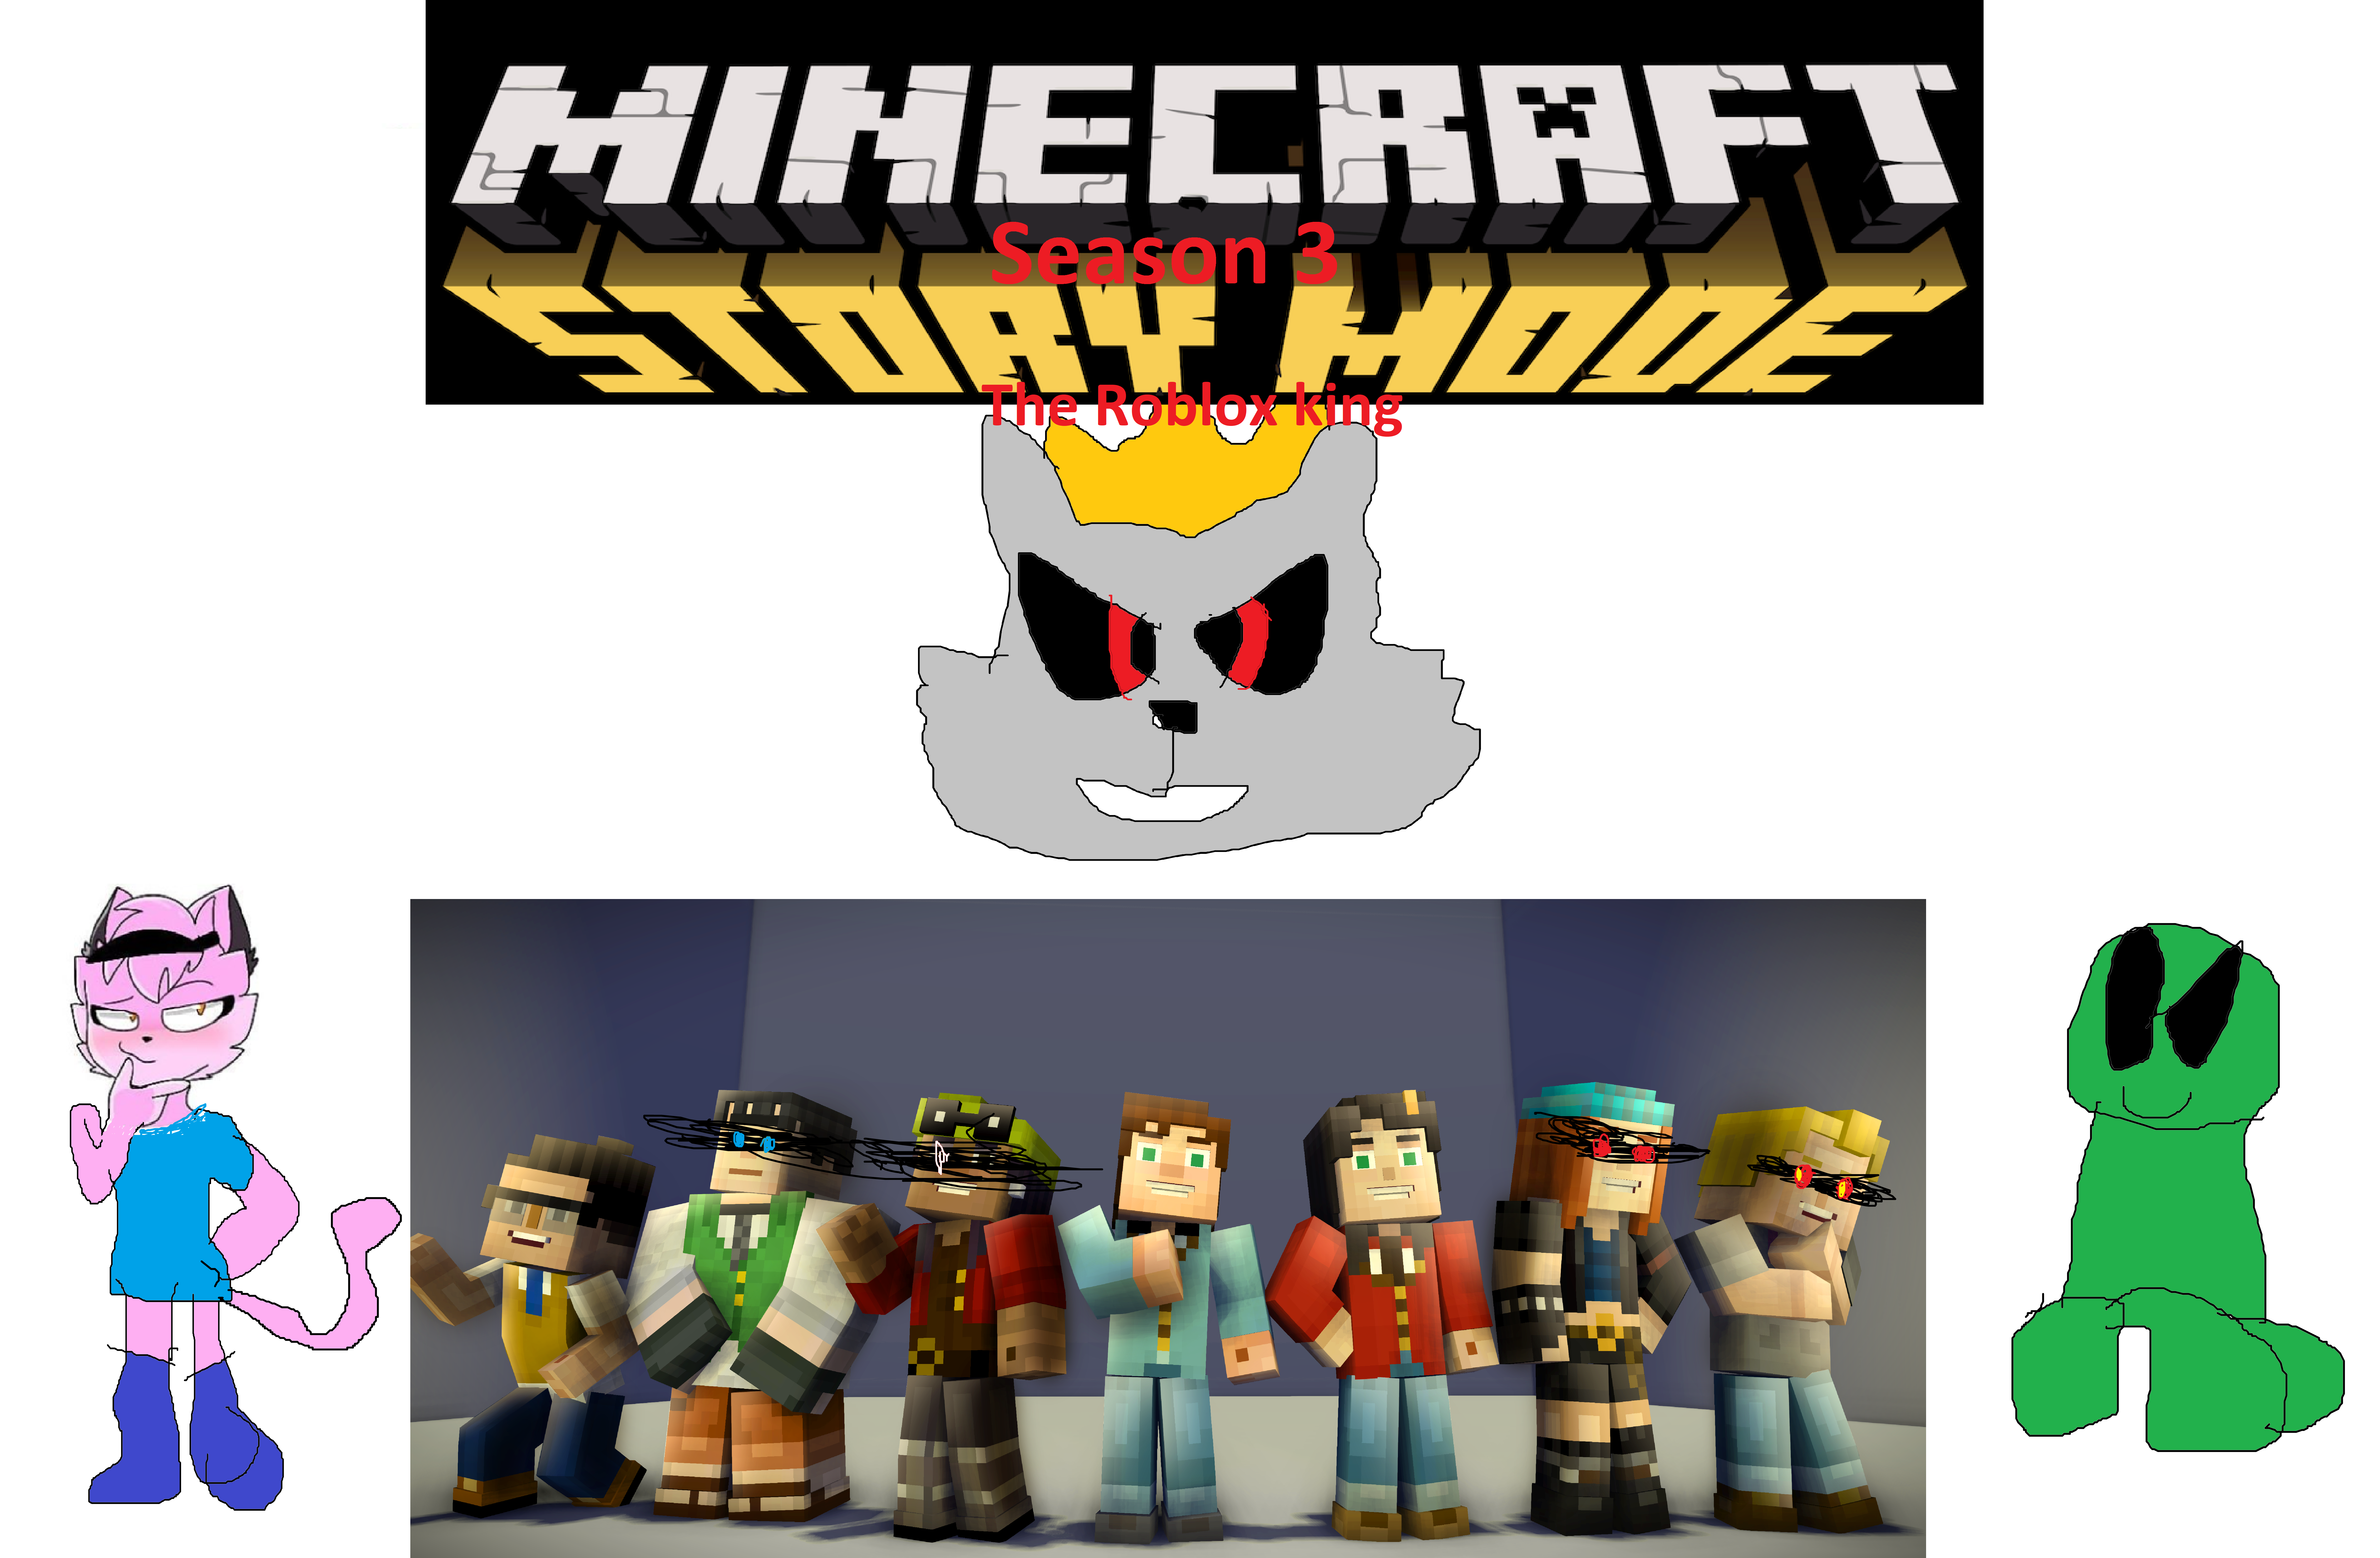 Minecraft: Story Mode - Meet the cast! 